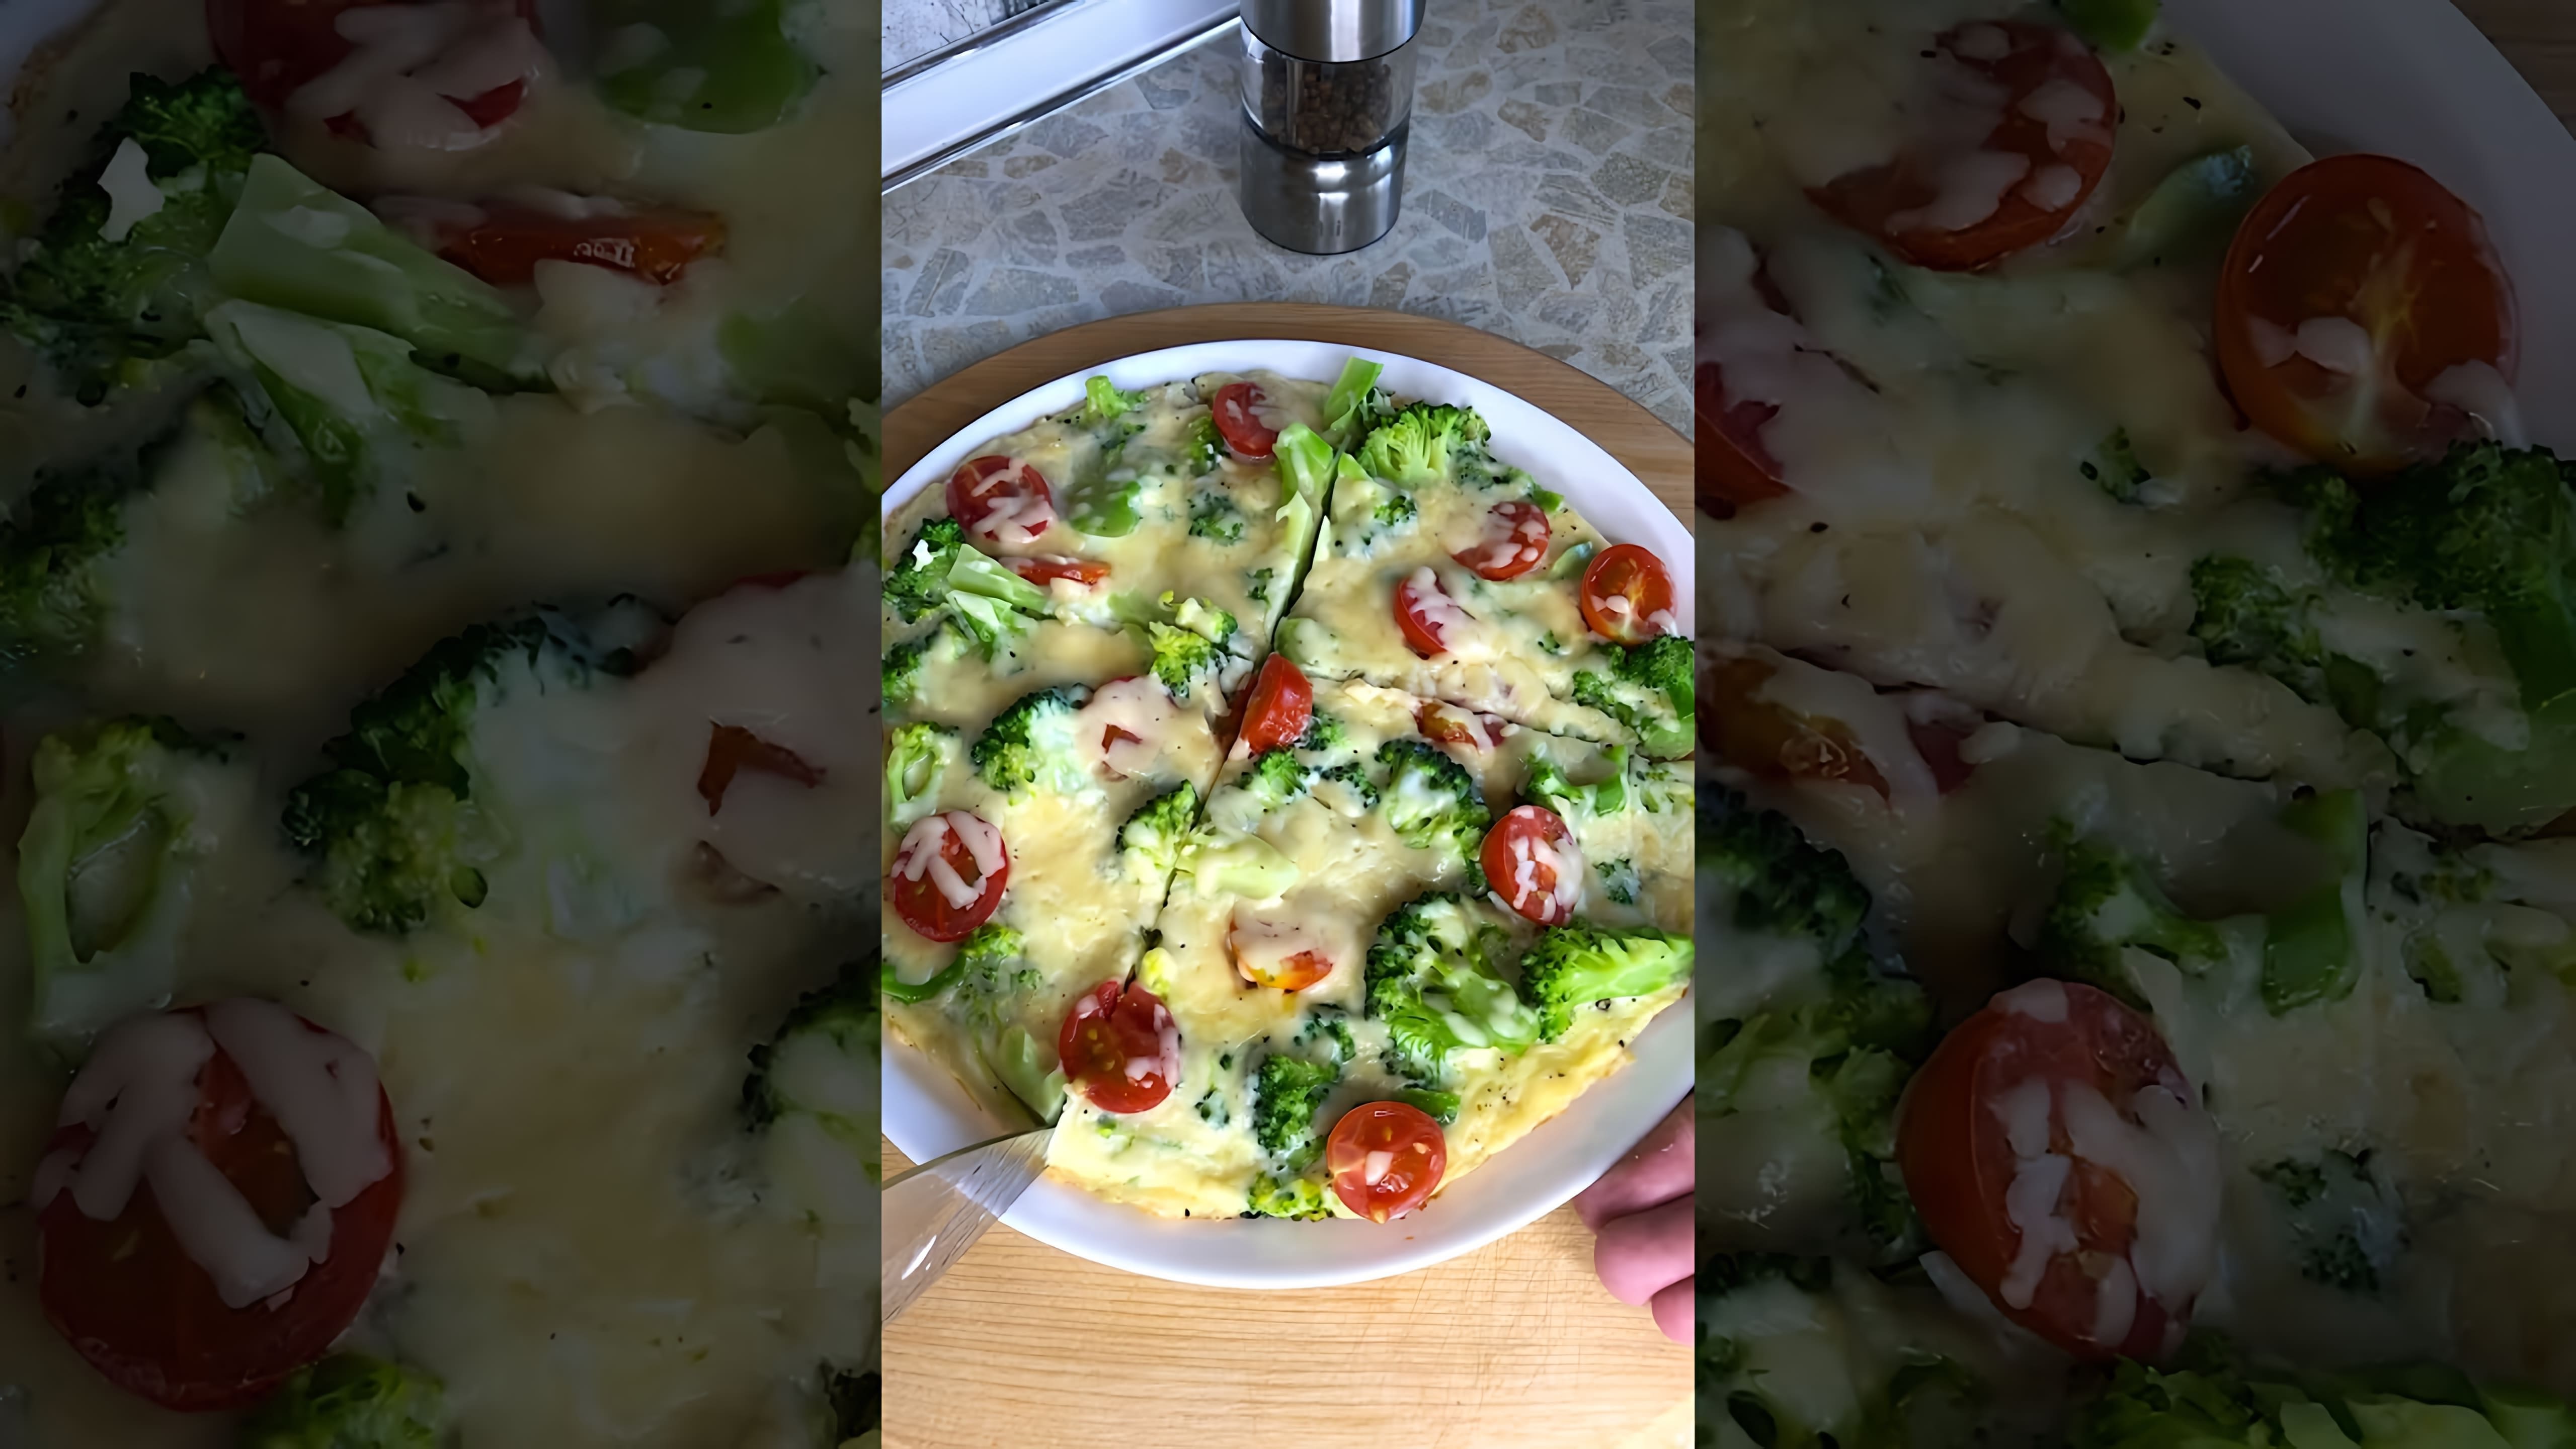 В этом видео показано, как быстро и легко приготовить вкусный и полезный завтрак с брокколи